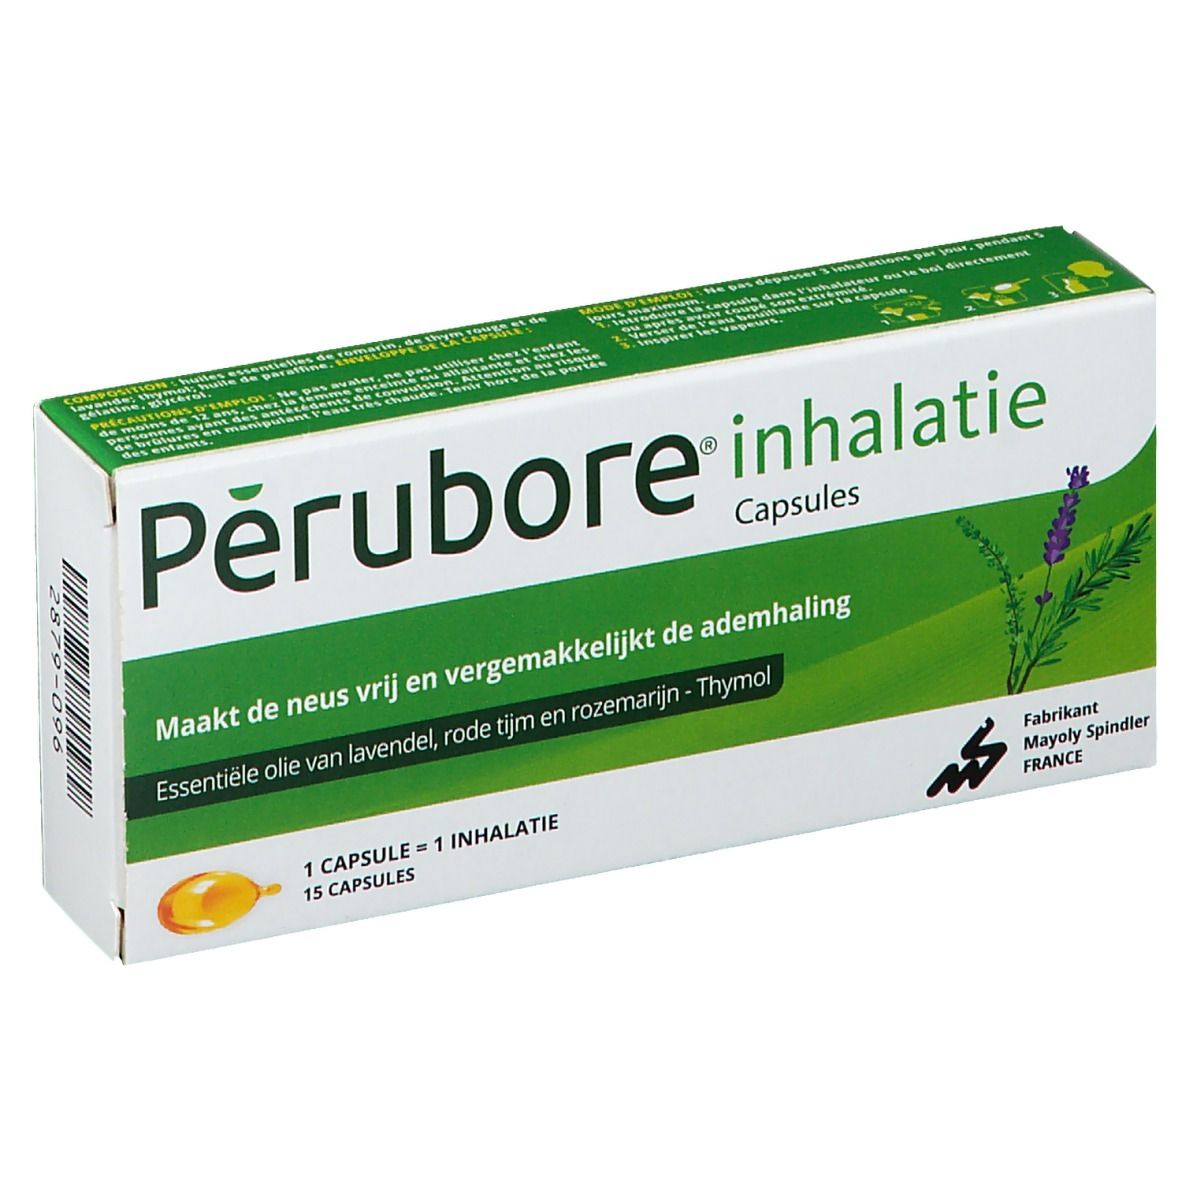 Perubore Inhalation Huiles Essentielles 15 Capsules